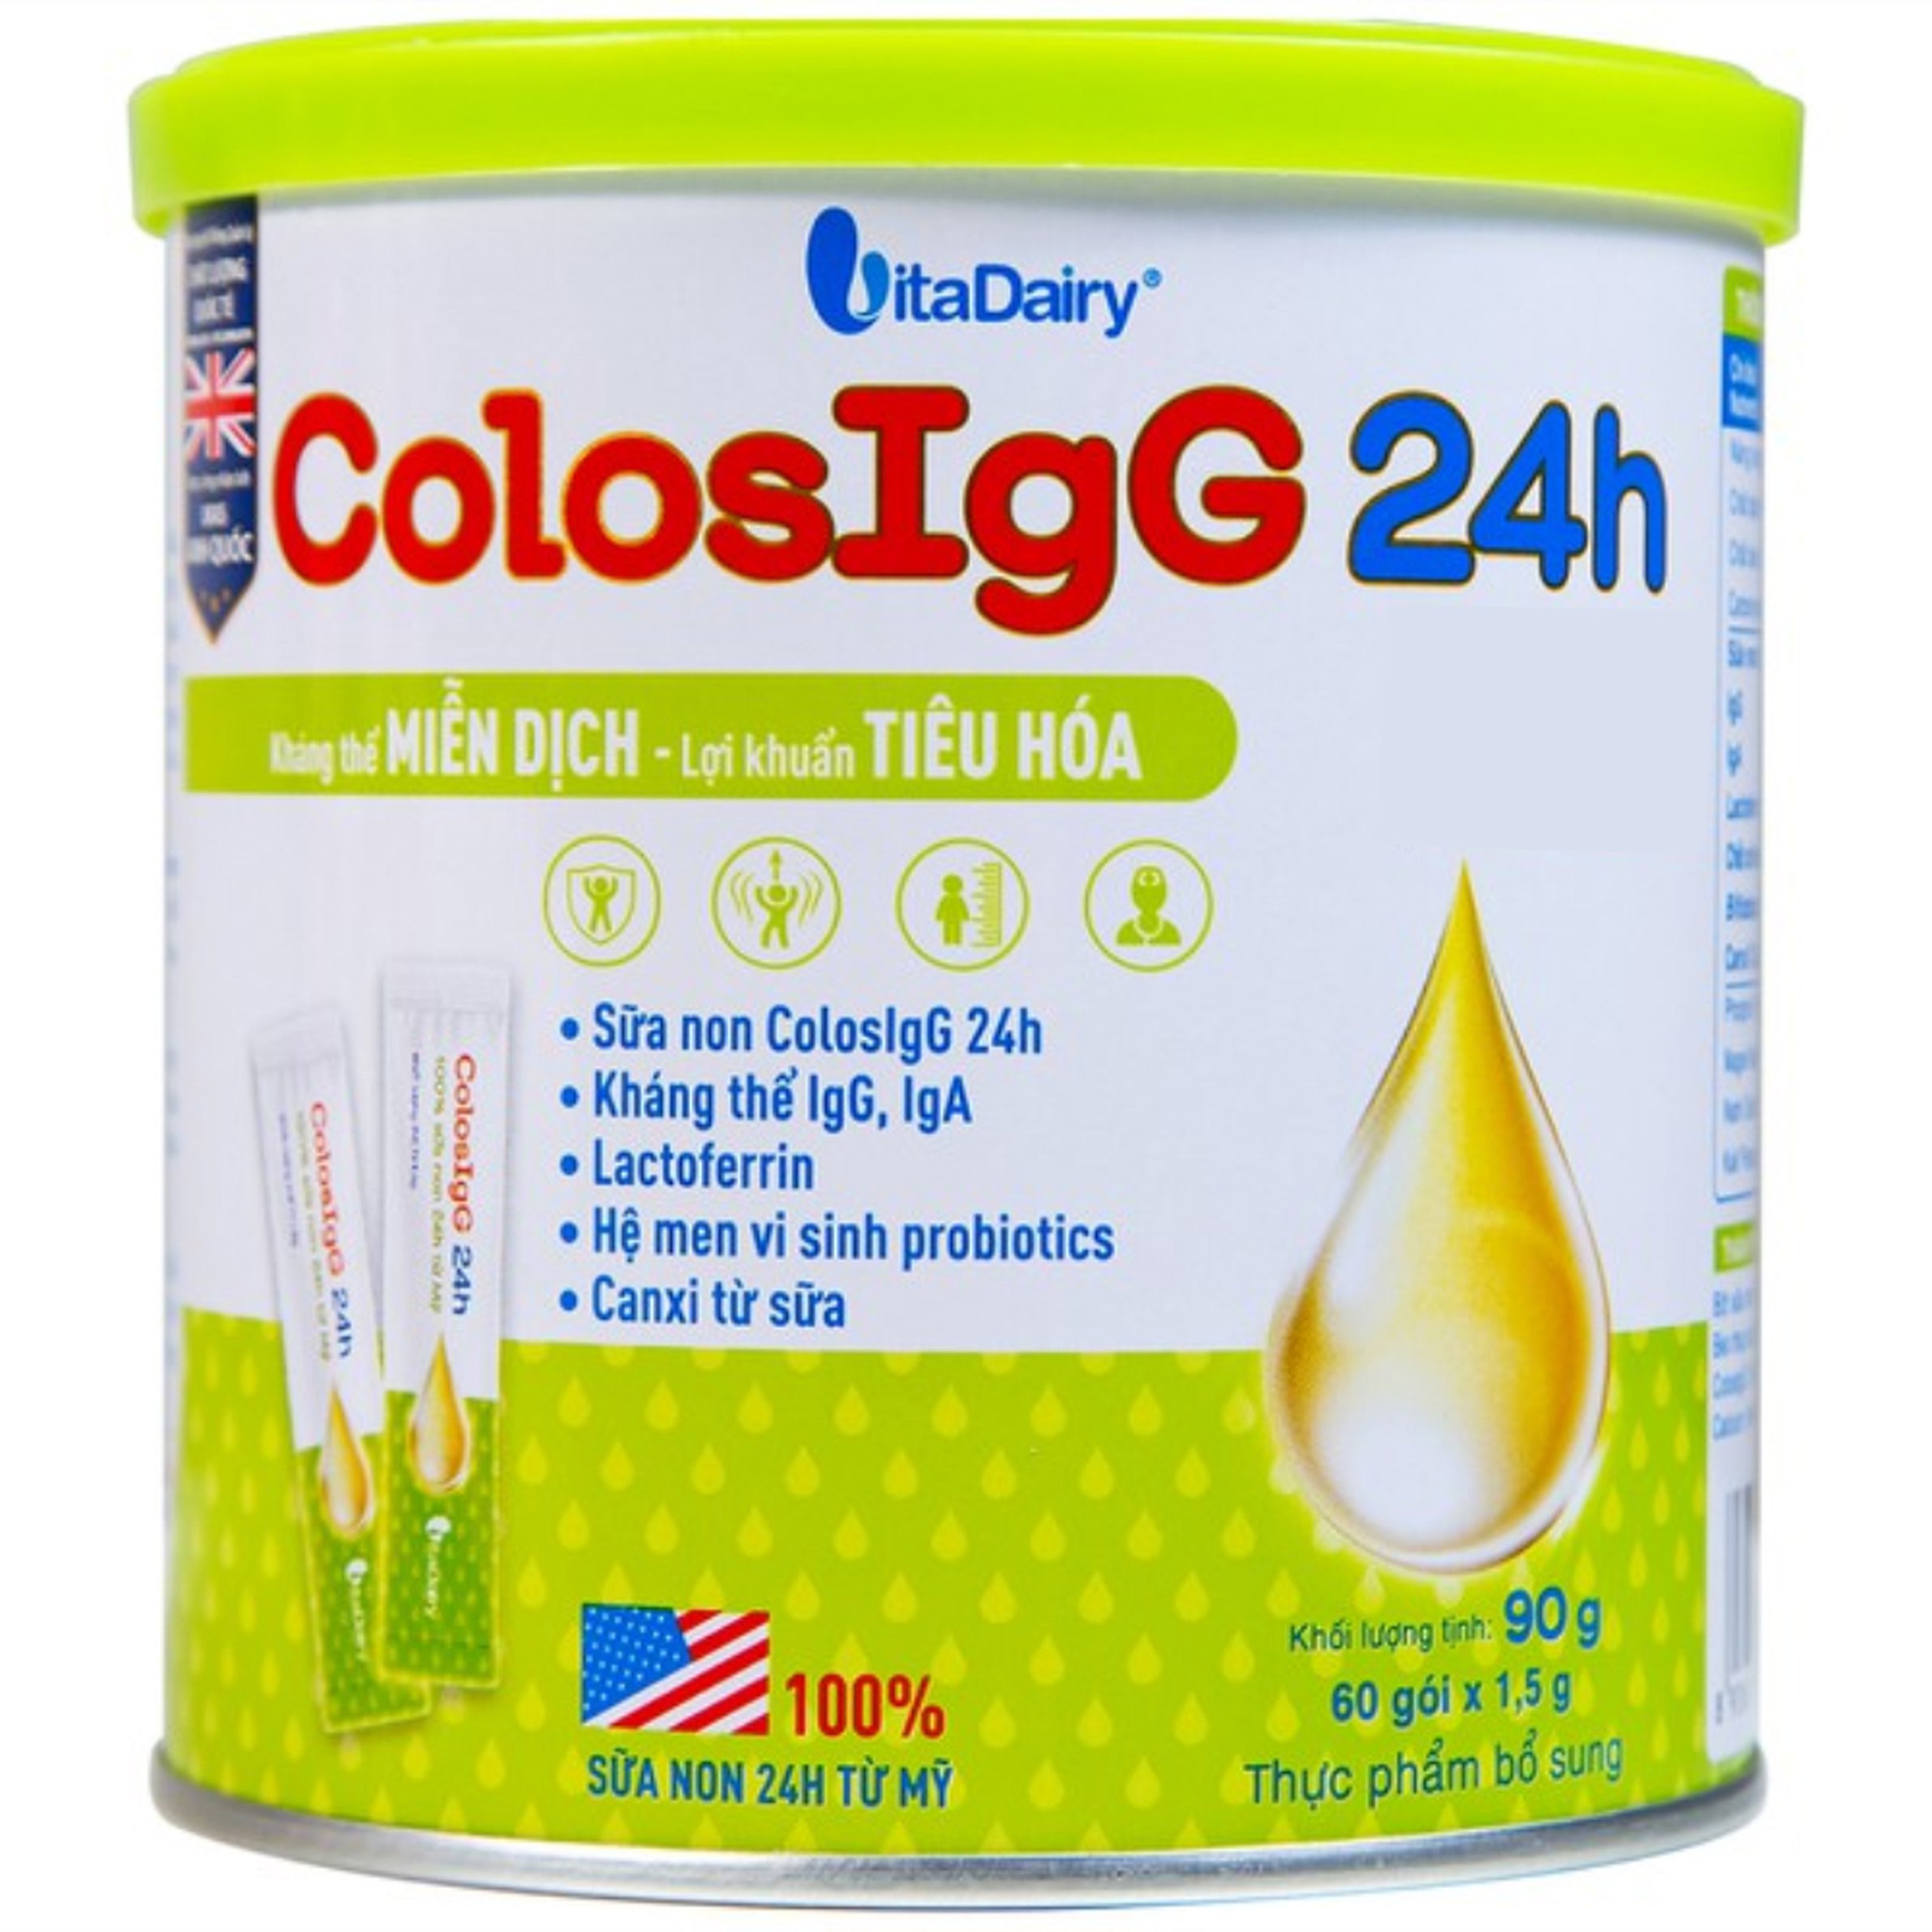 Sữa ColosIgG 24h Vitadairy hỗ trợ tăng cường miễn dịch và tiêu hóa (60 gói x 1.5g)